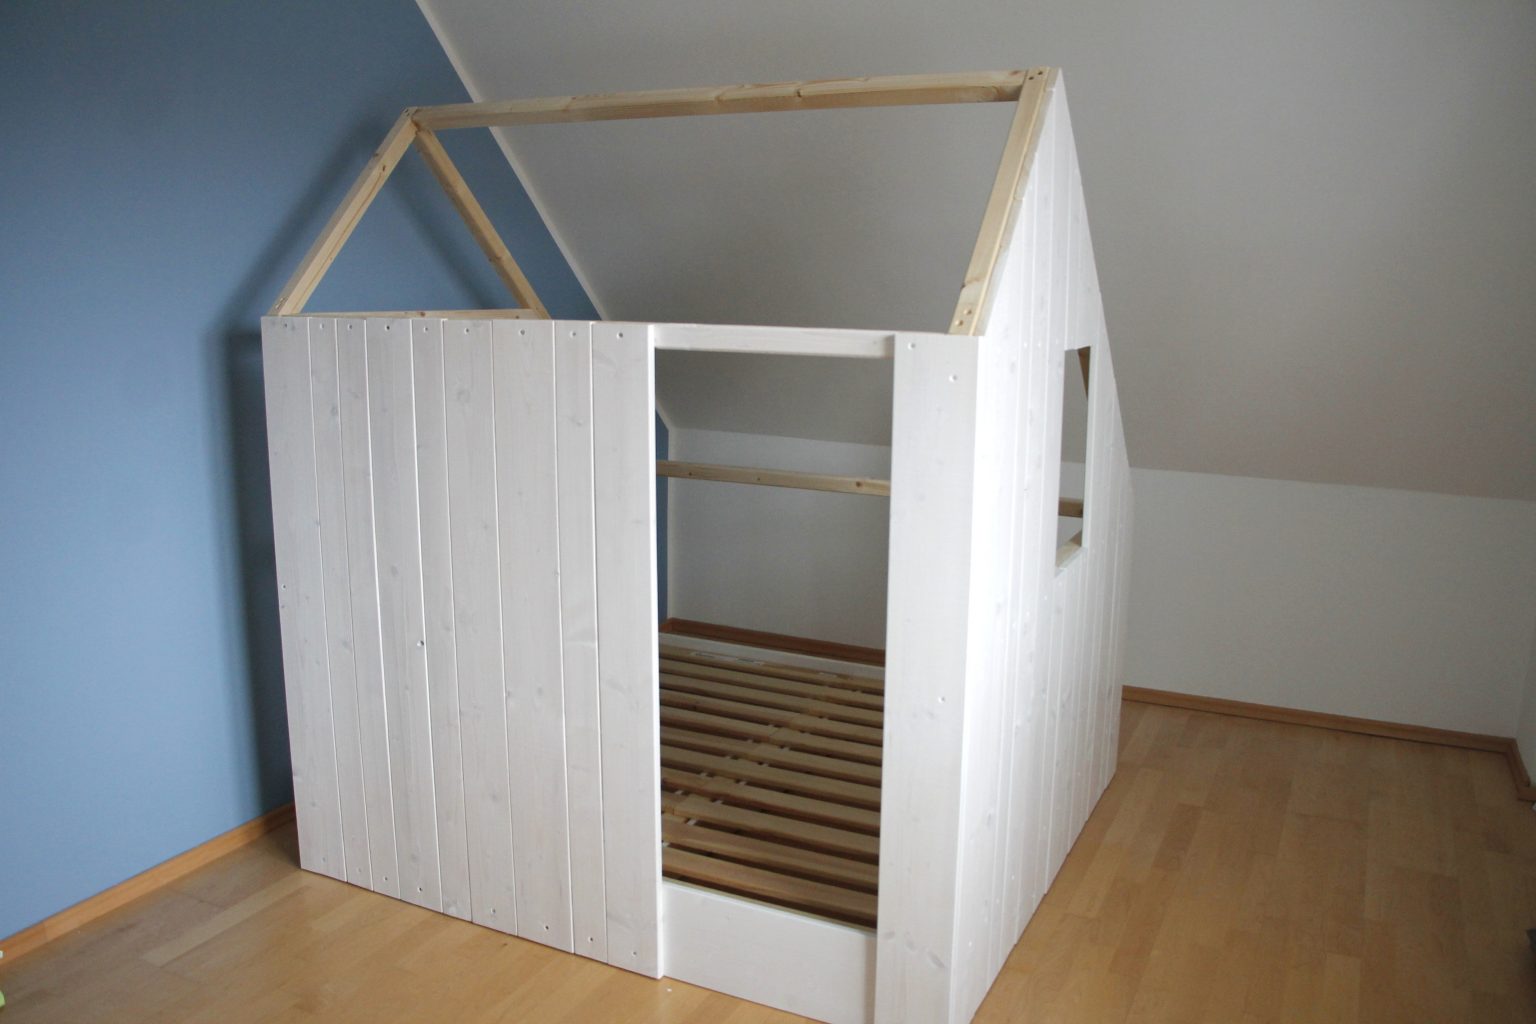 Kinderzimmer-Spielhaus selber bauen: Holz-Projekt für ...